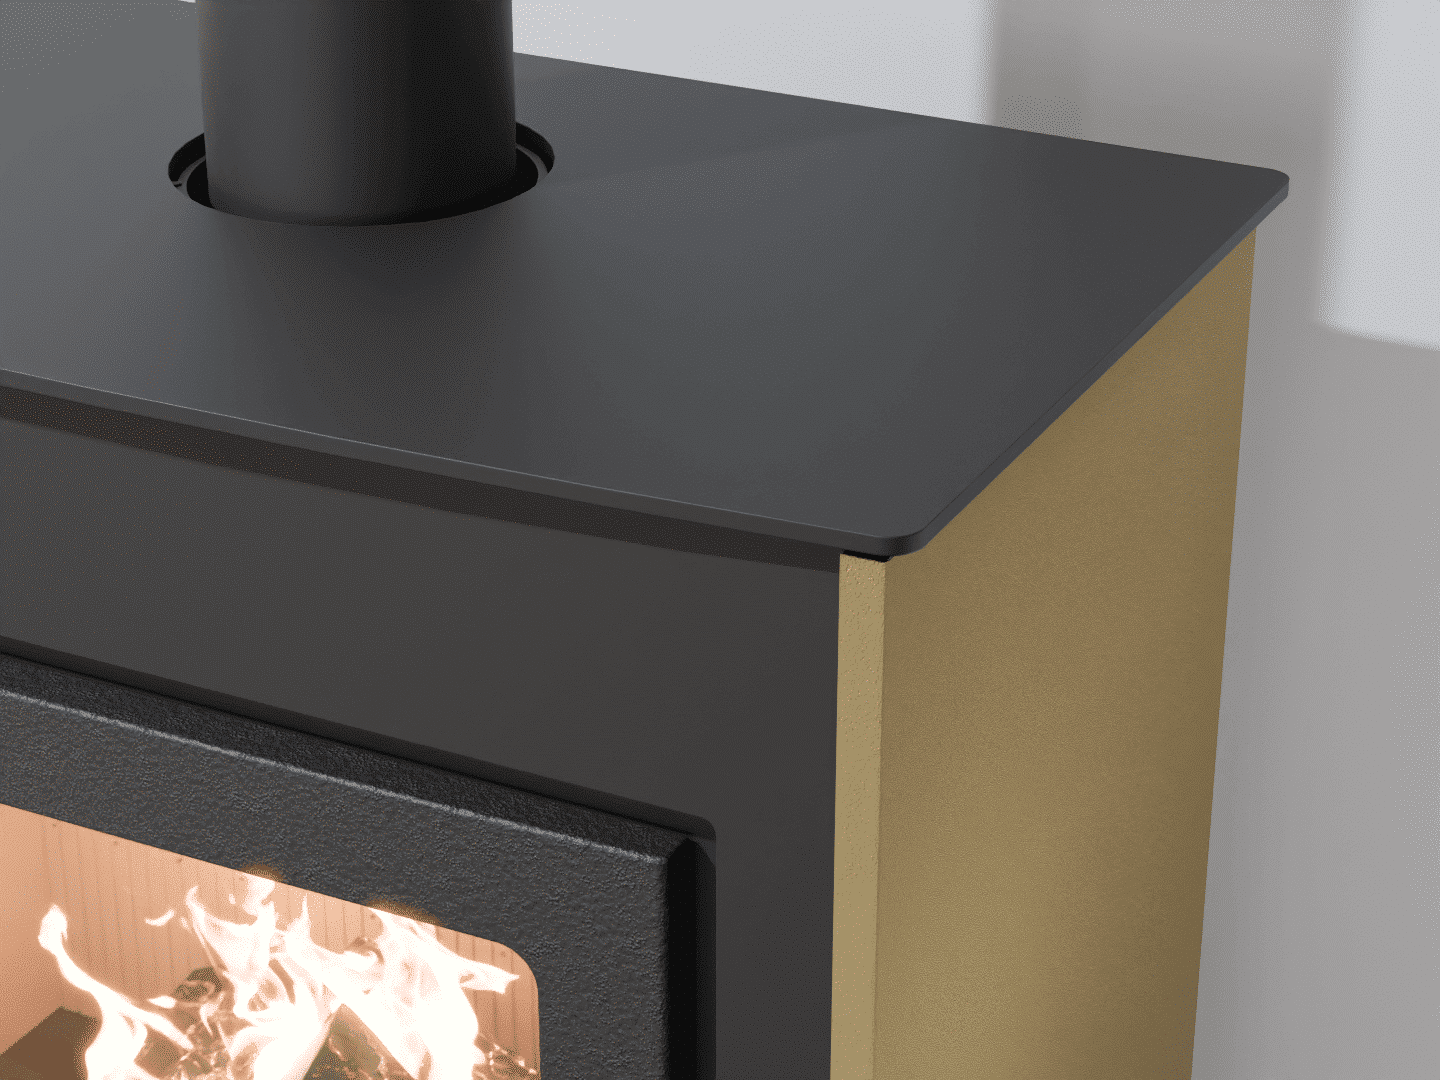 2101_Fireplace stove with heat exchanger_Khaki Grey_KamnaSchejbal_Kamna Schejbal_Kamnazvyroby_detail pravý bok